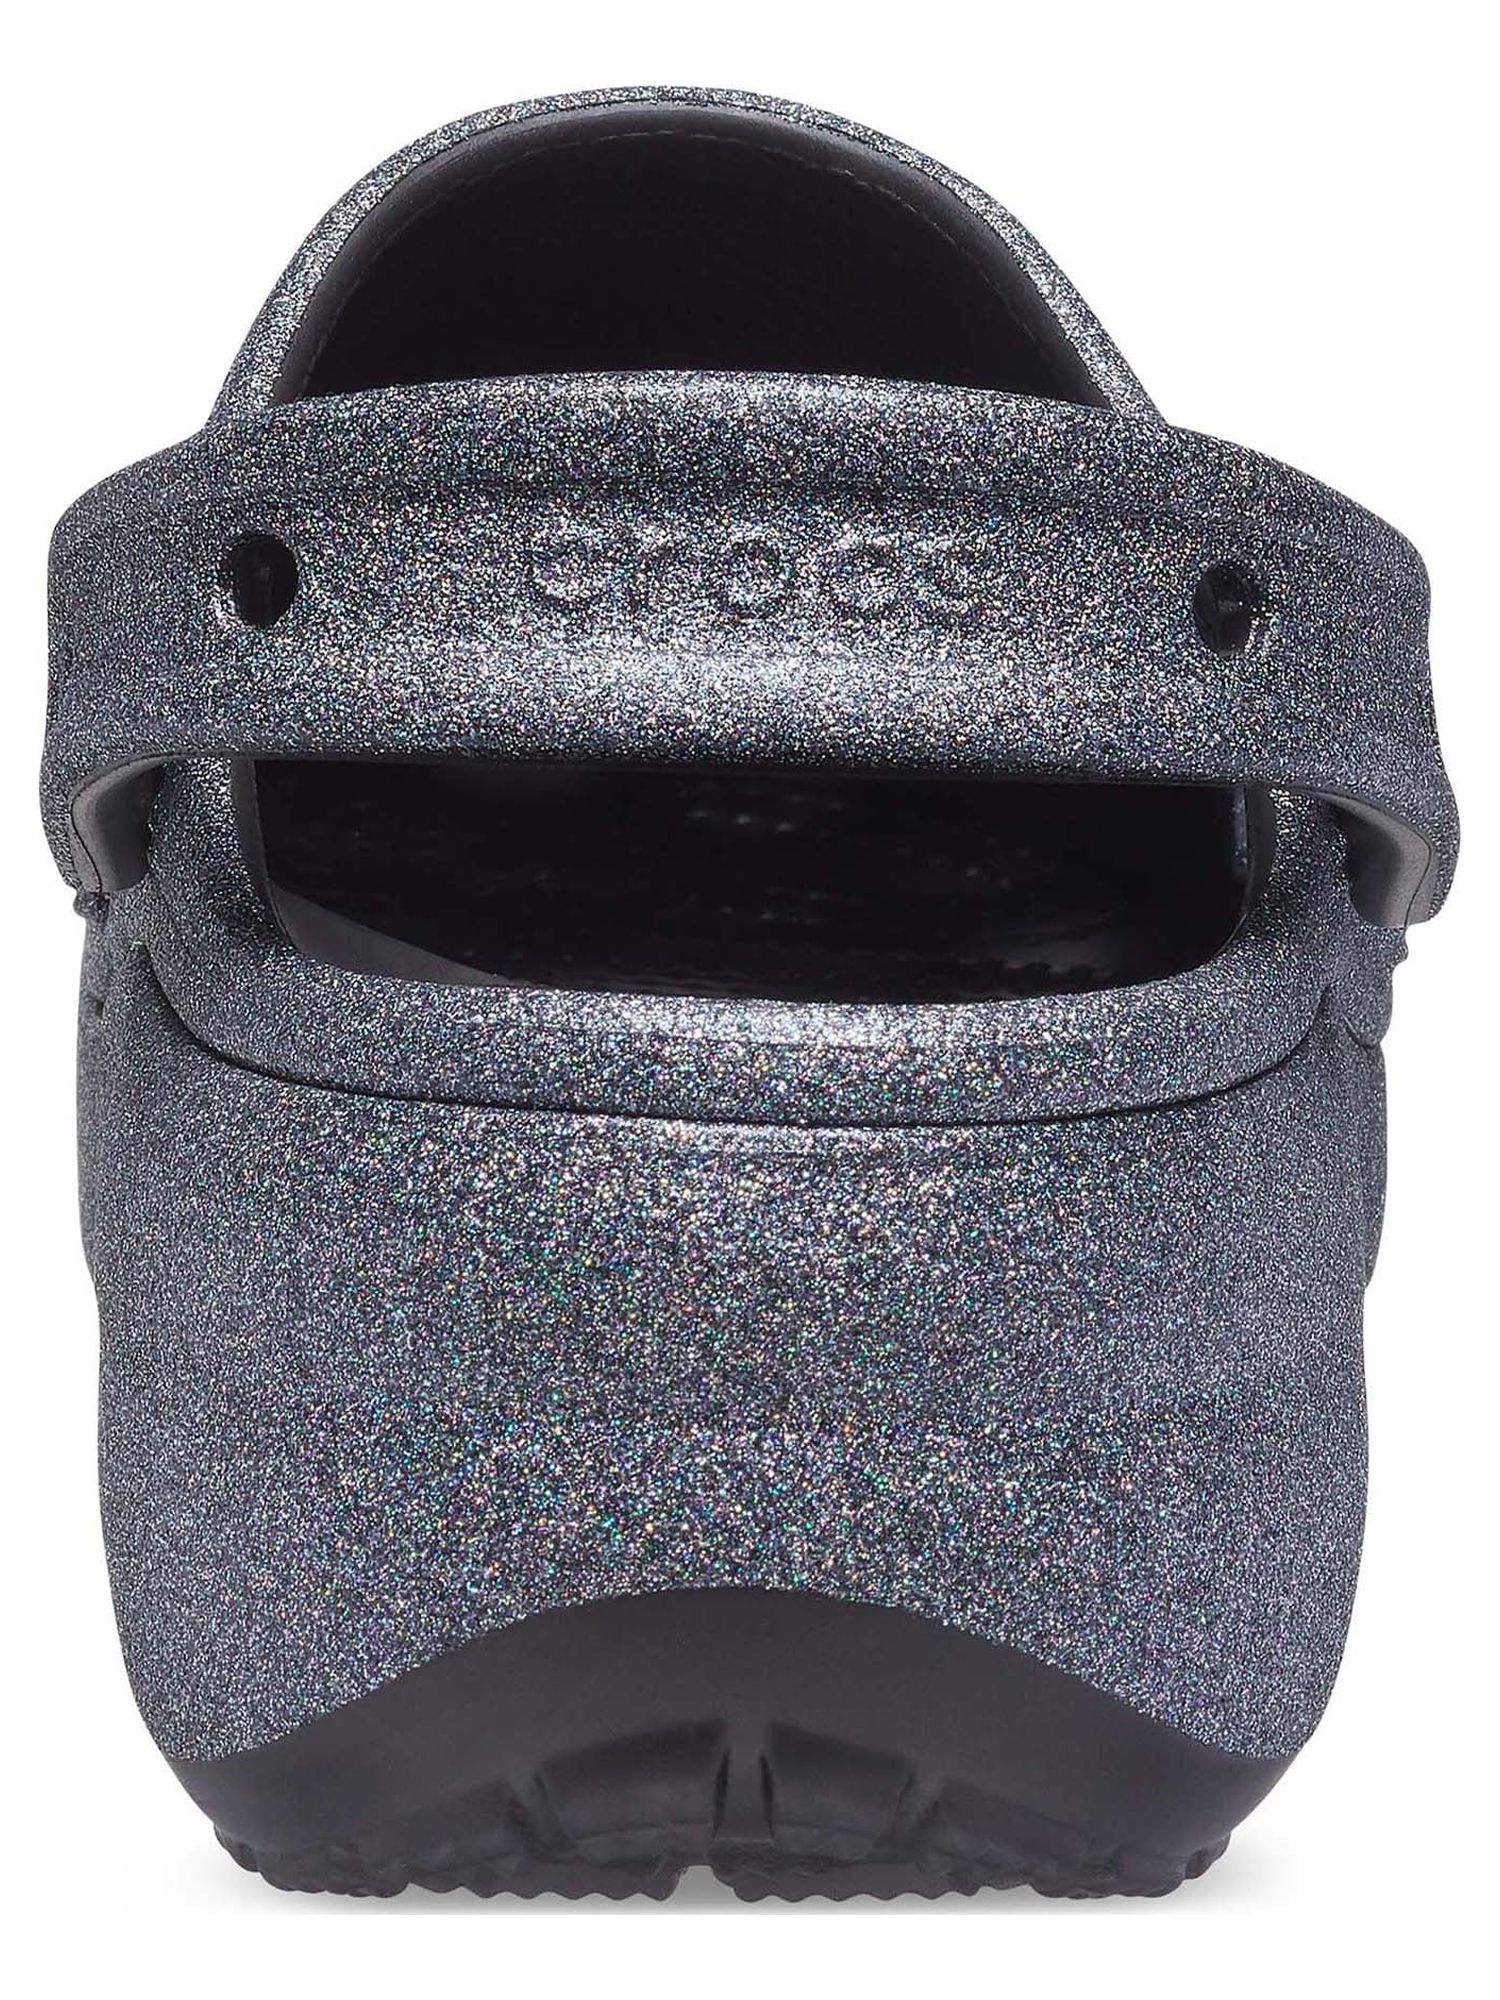 Crocs Women's Classic Platform Glitter II Clog - image 5 of 5